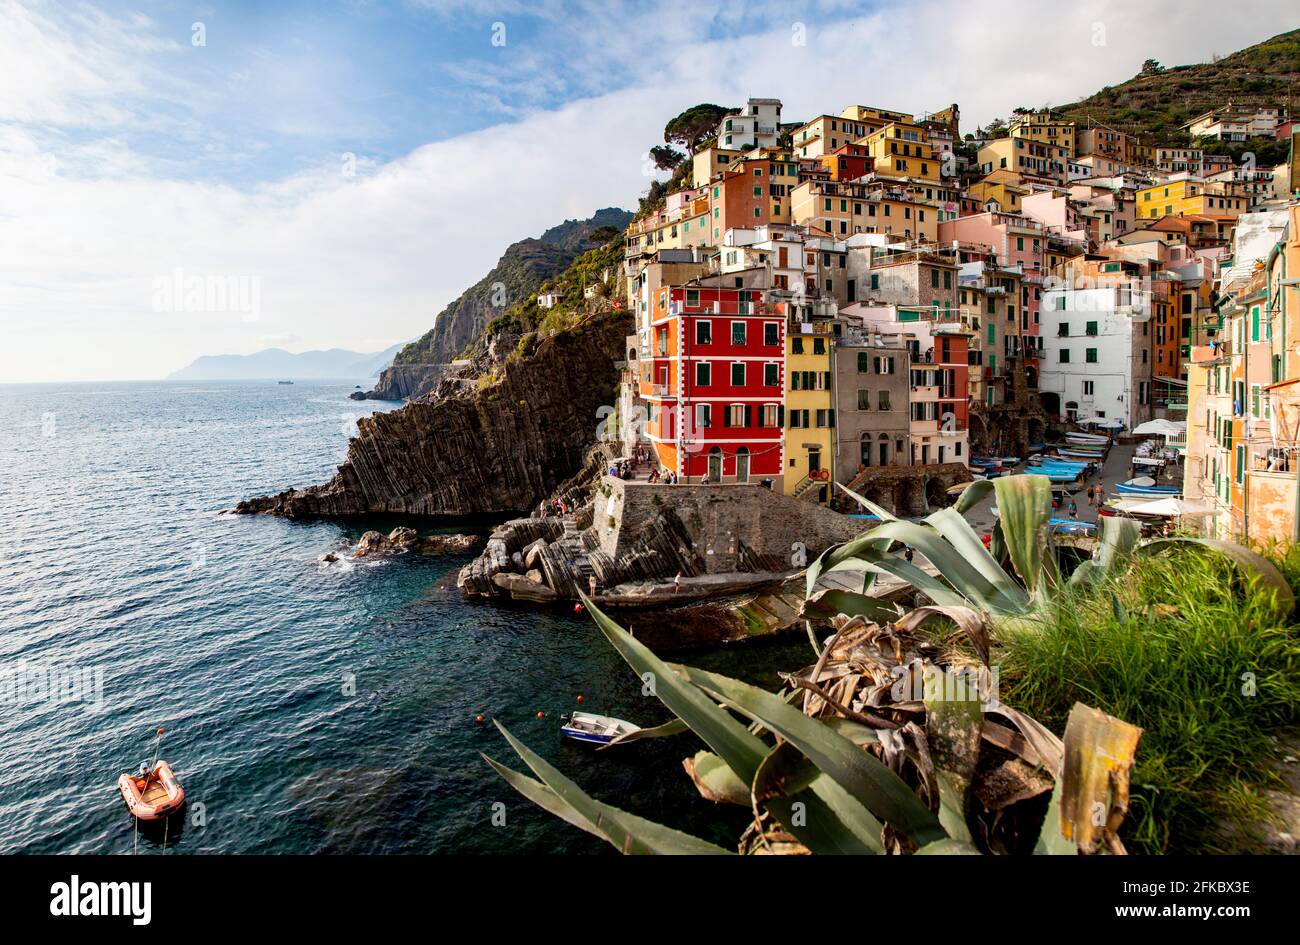 Picturesque village of Riomaggiore in Cinque Terre, UNESCO World Heritage Site, province of La Spezia, Liguria region, Italy, Europe Stock Photo